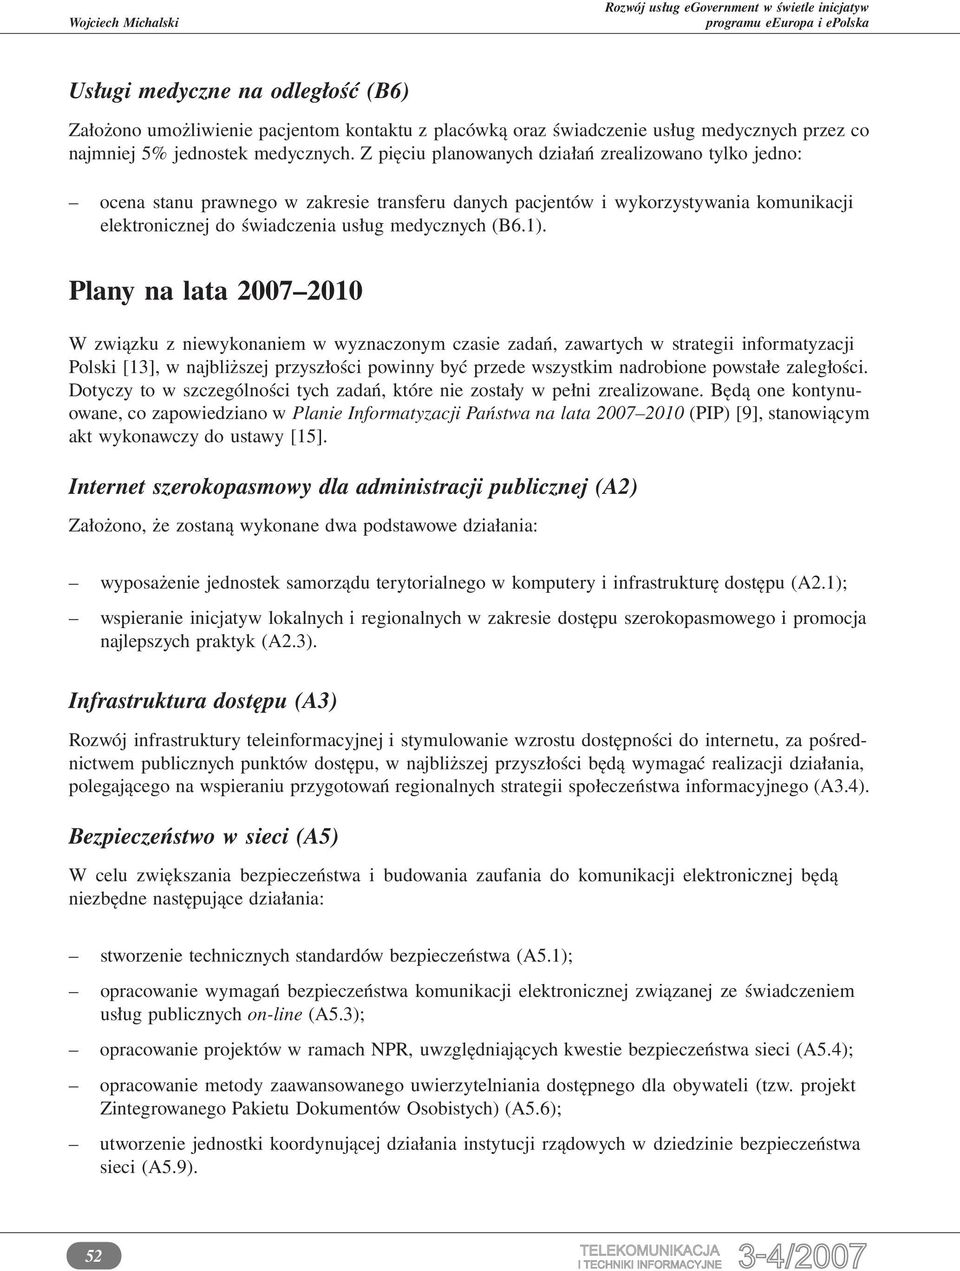 Plany na lata 2007 2010 W związku z niewykonaniem w wyznaczonym czasie zadań, zawartych w strategii informatyzacji Polski [13], w najbliższej przyszłości powinny być przede wszystkim nadrobione